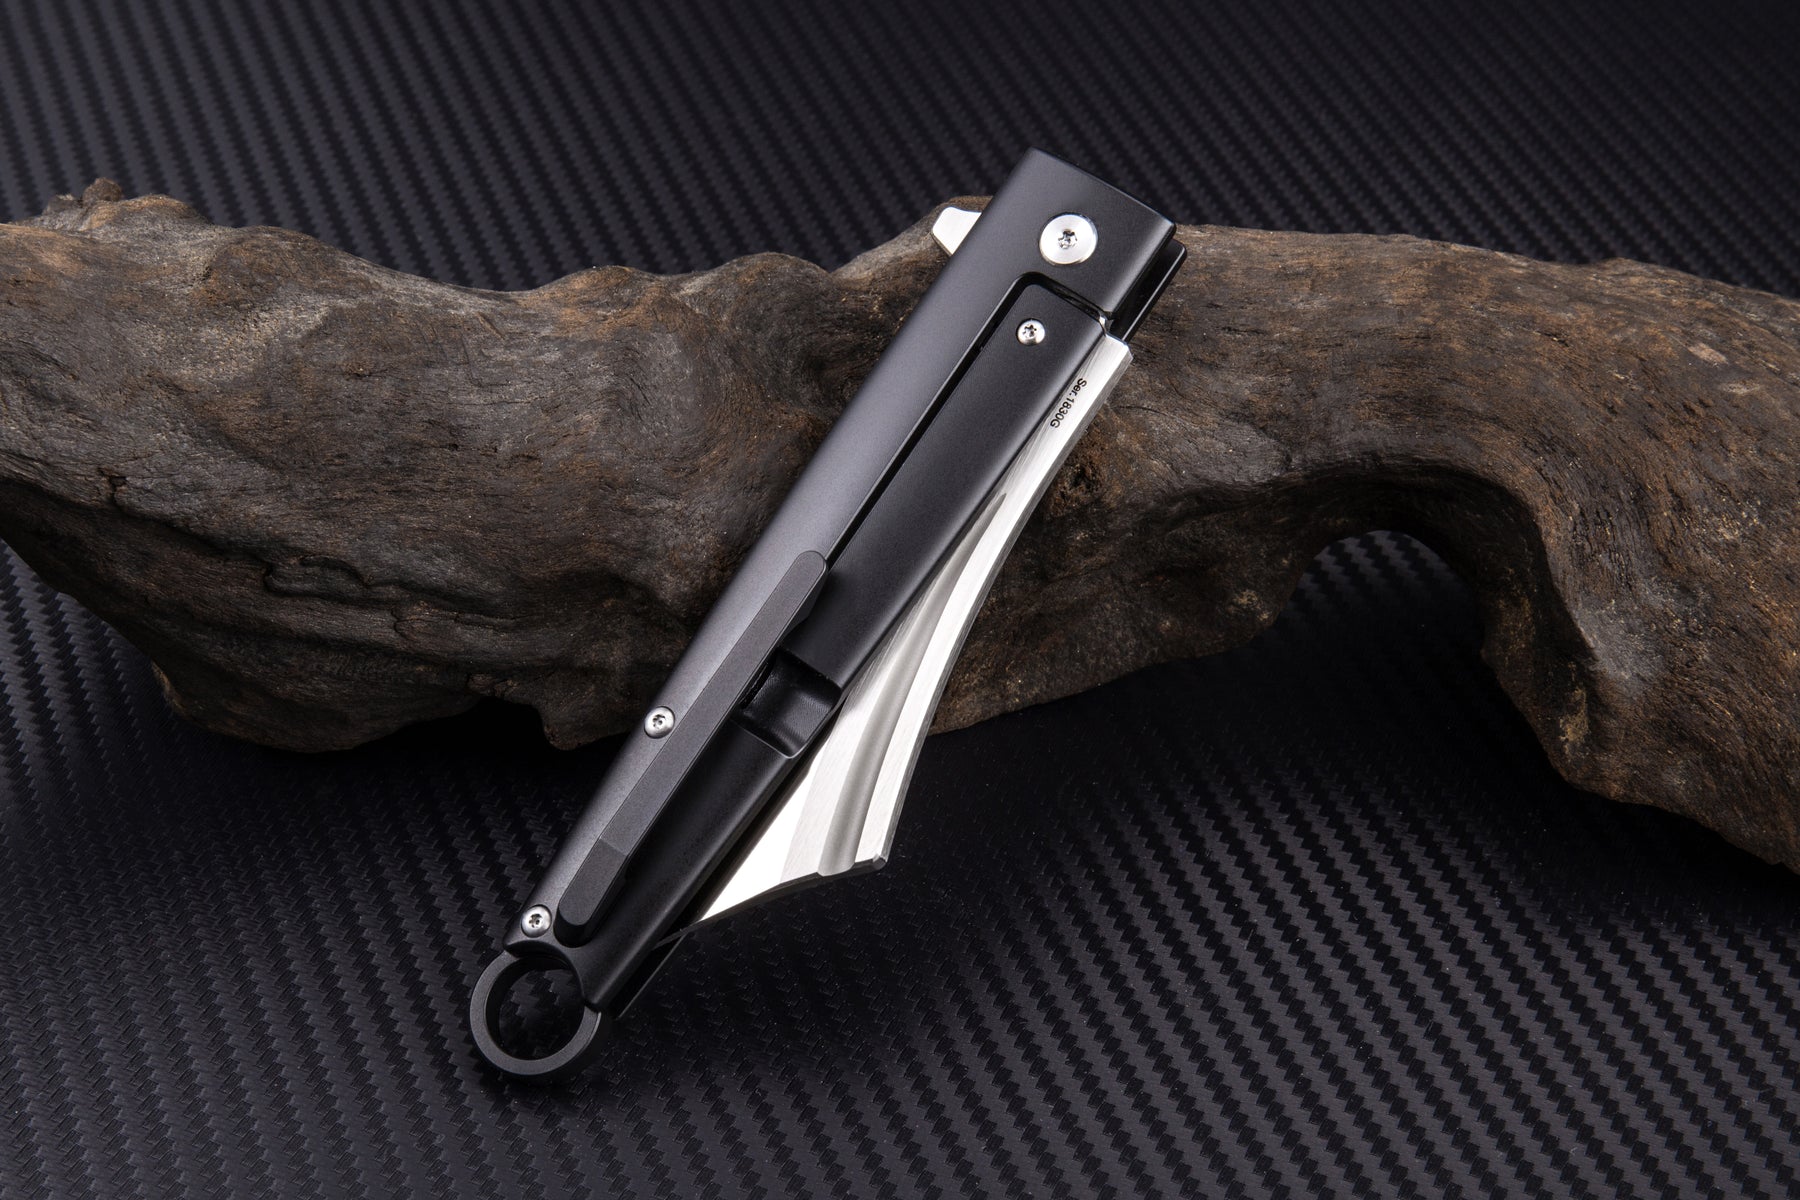 Artisan Cutlery Cutlass ATZ-1830G S35VN Blade Titanium and Carbon fiber Handle Folding Knives